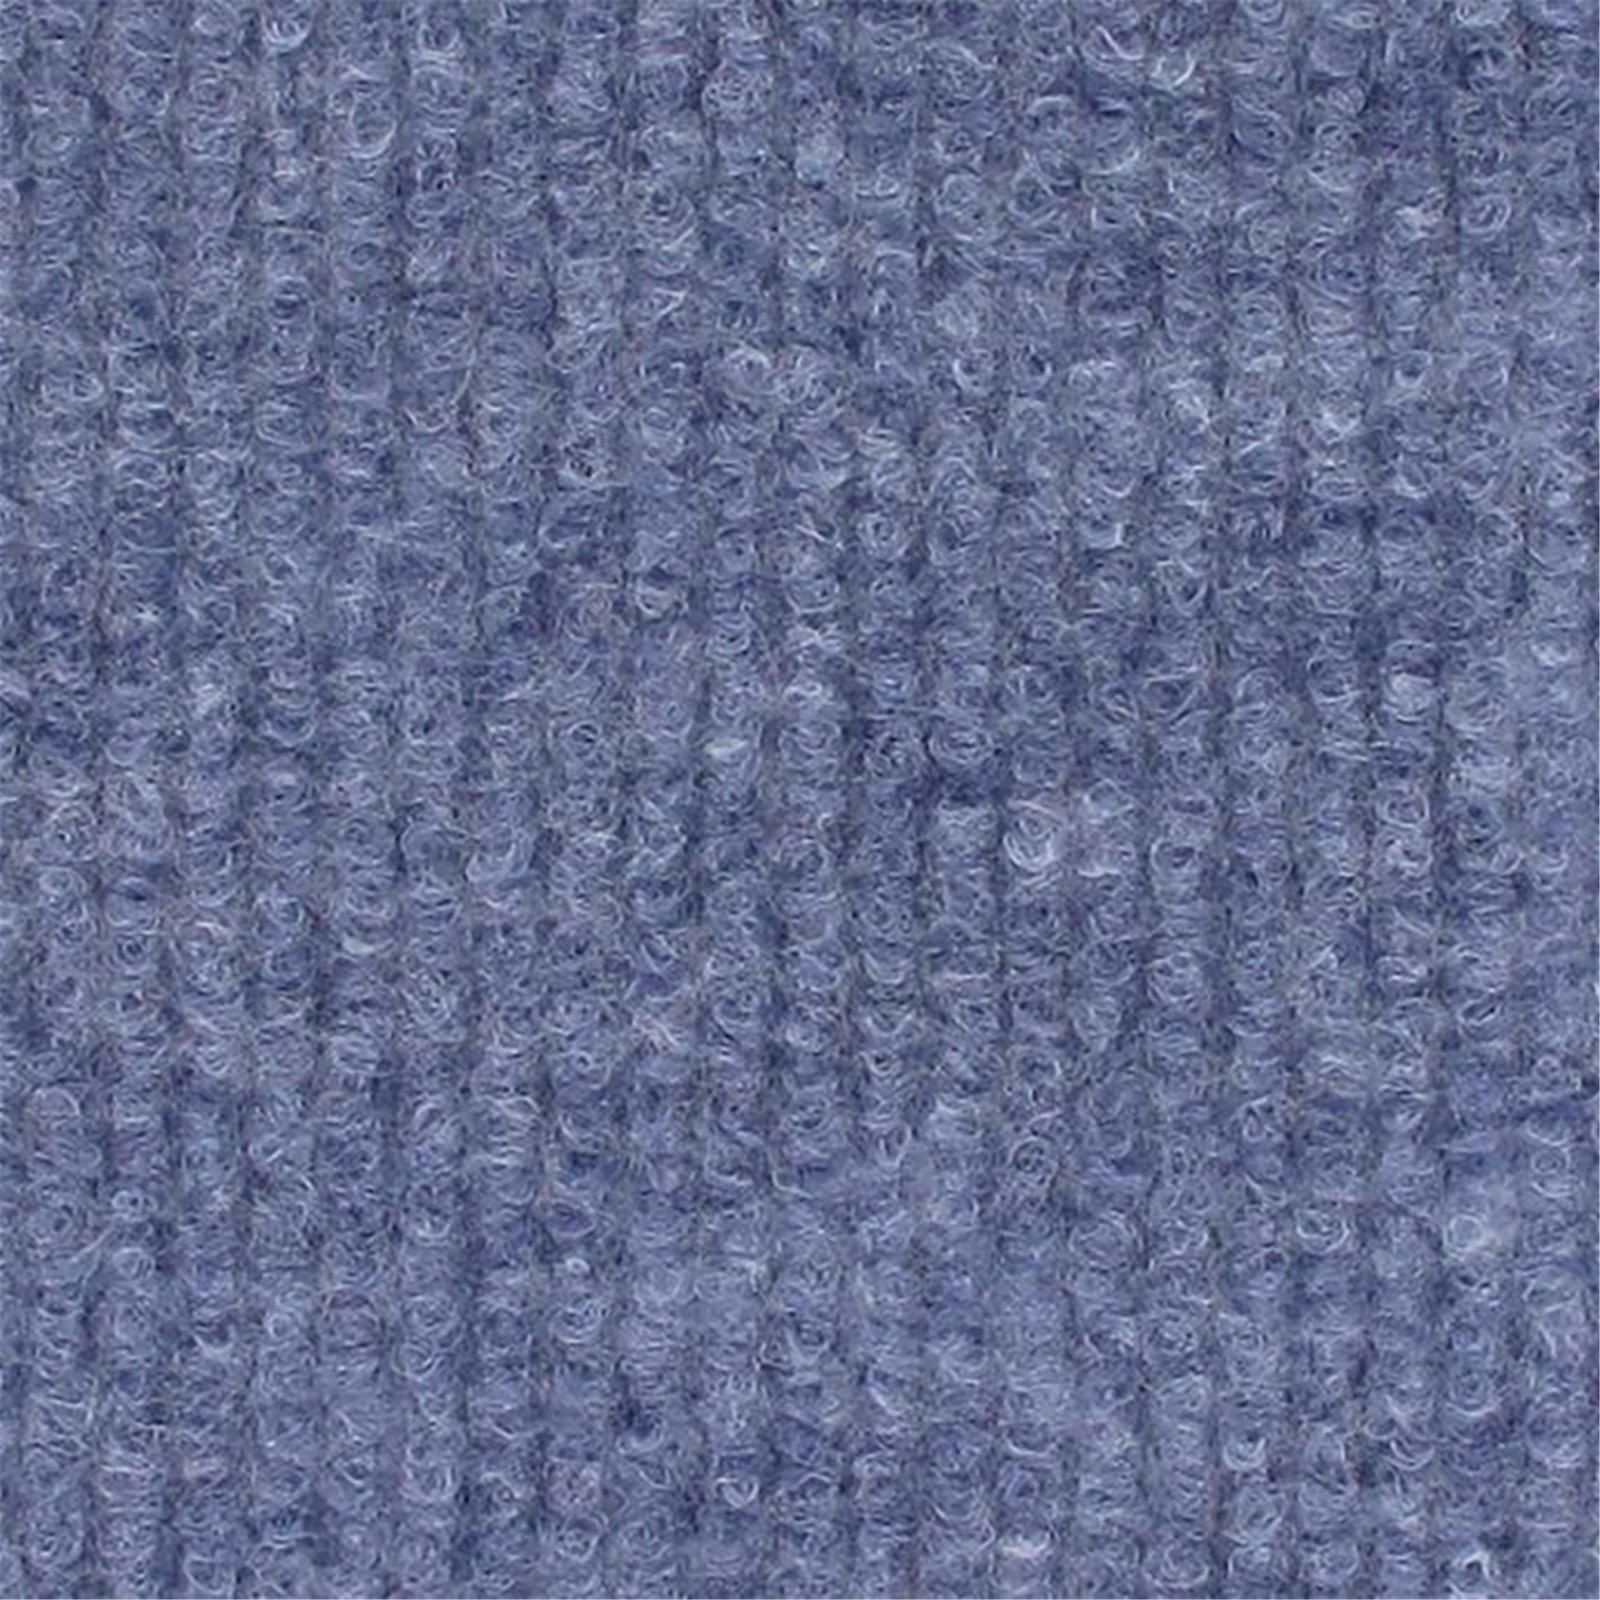 Messeboden Rips-Nadelvlies EXPOLINE Blue Jeans 0024 100qm ohne Schutzfolie - Rollenbreite 200 cm